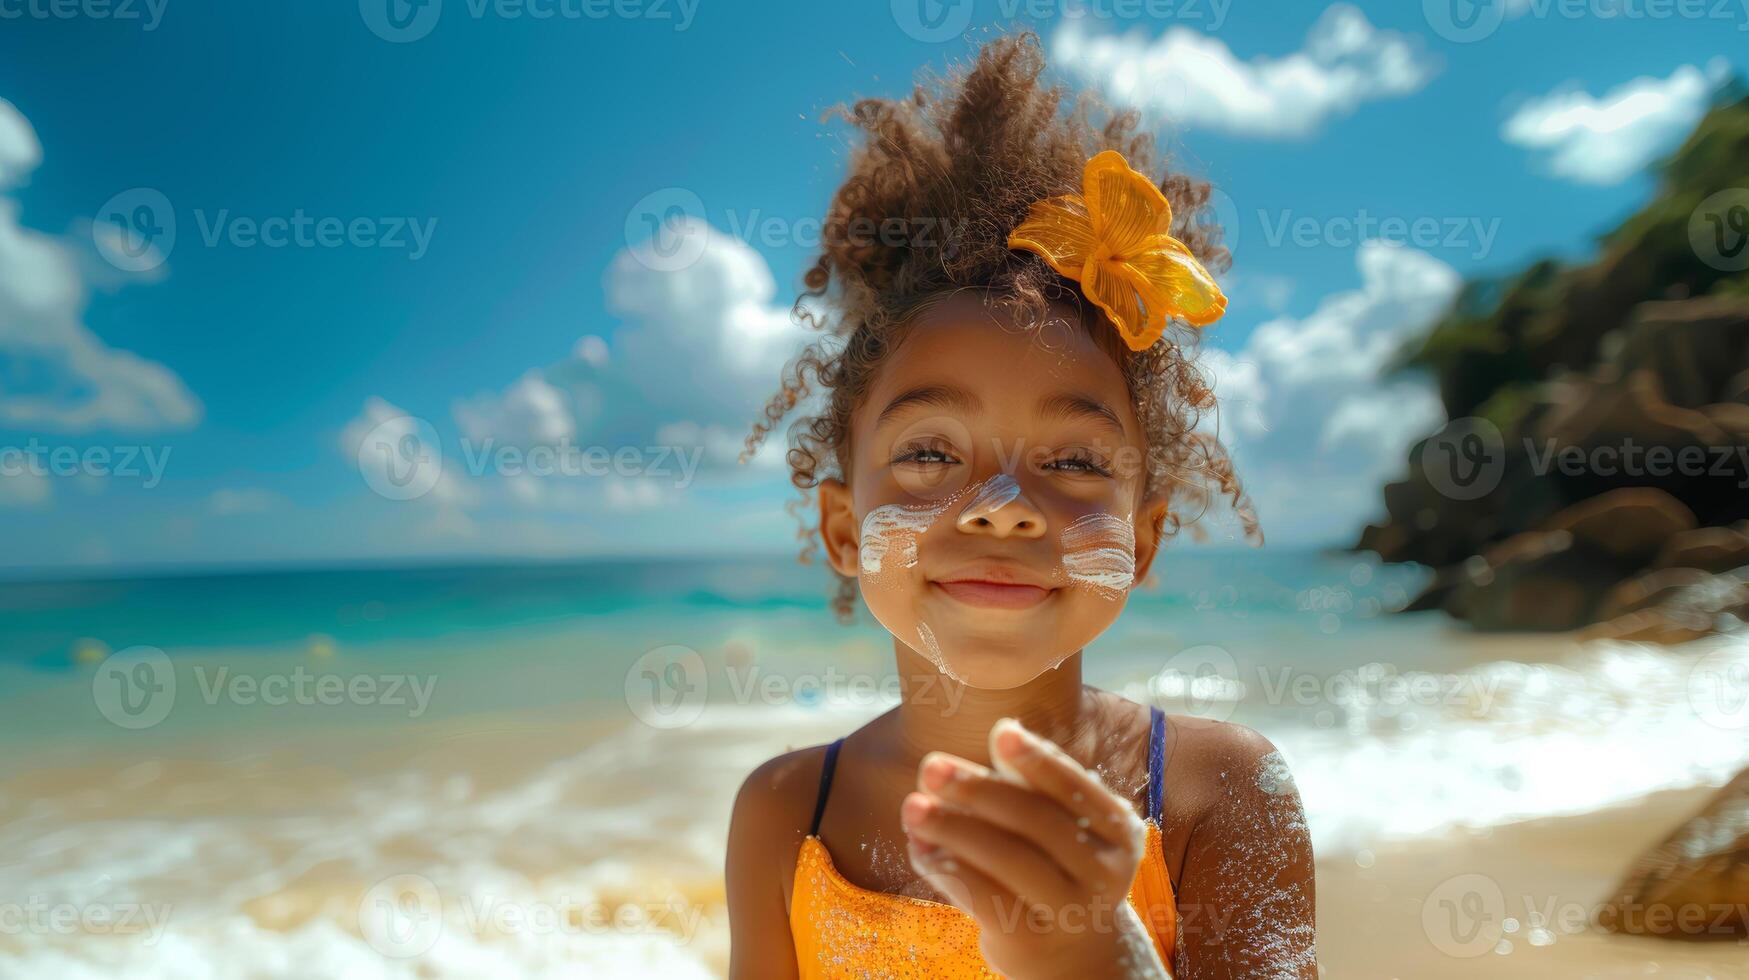 jung Mädchen mit Sonnenschutz genießen ein sonnig Strand Tag, süß Lächeln und tropisch Rahmen foto